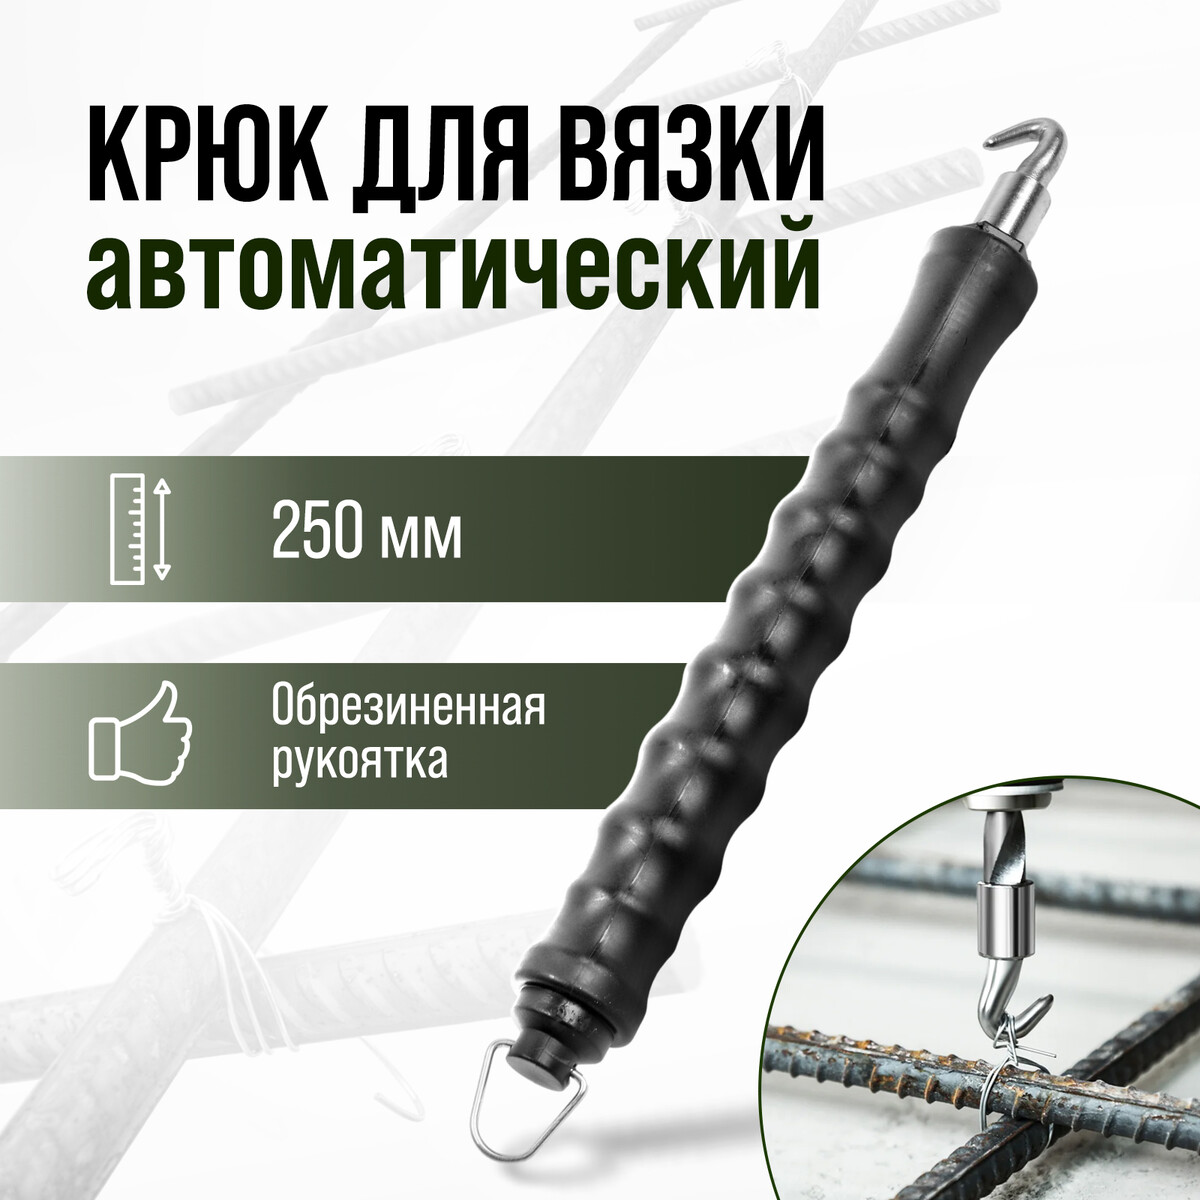 Крюк для вязки арматуры тундра, автоматический, обрезиненная рукоятка, 250 мм топор bartex универсальный рукоятка фибергласовая обрезиненная 0 64 кг